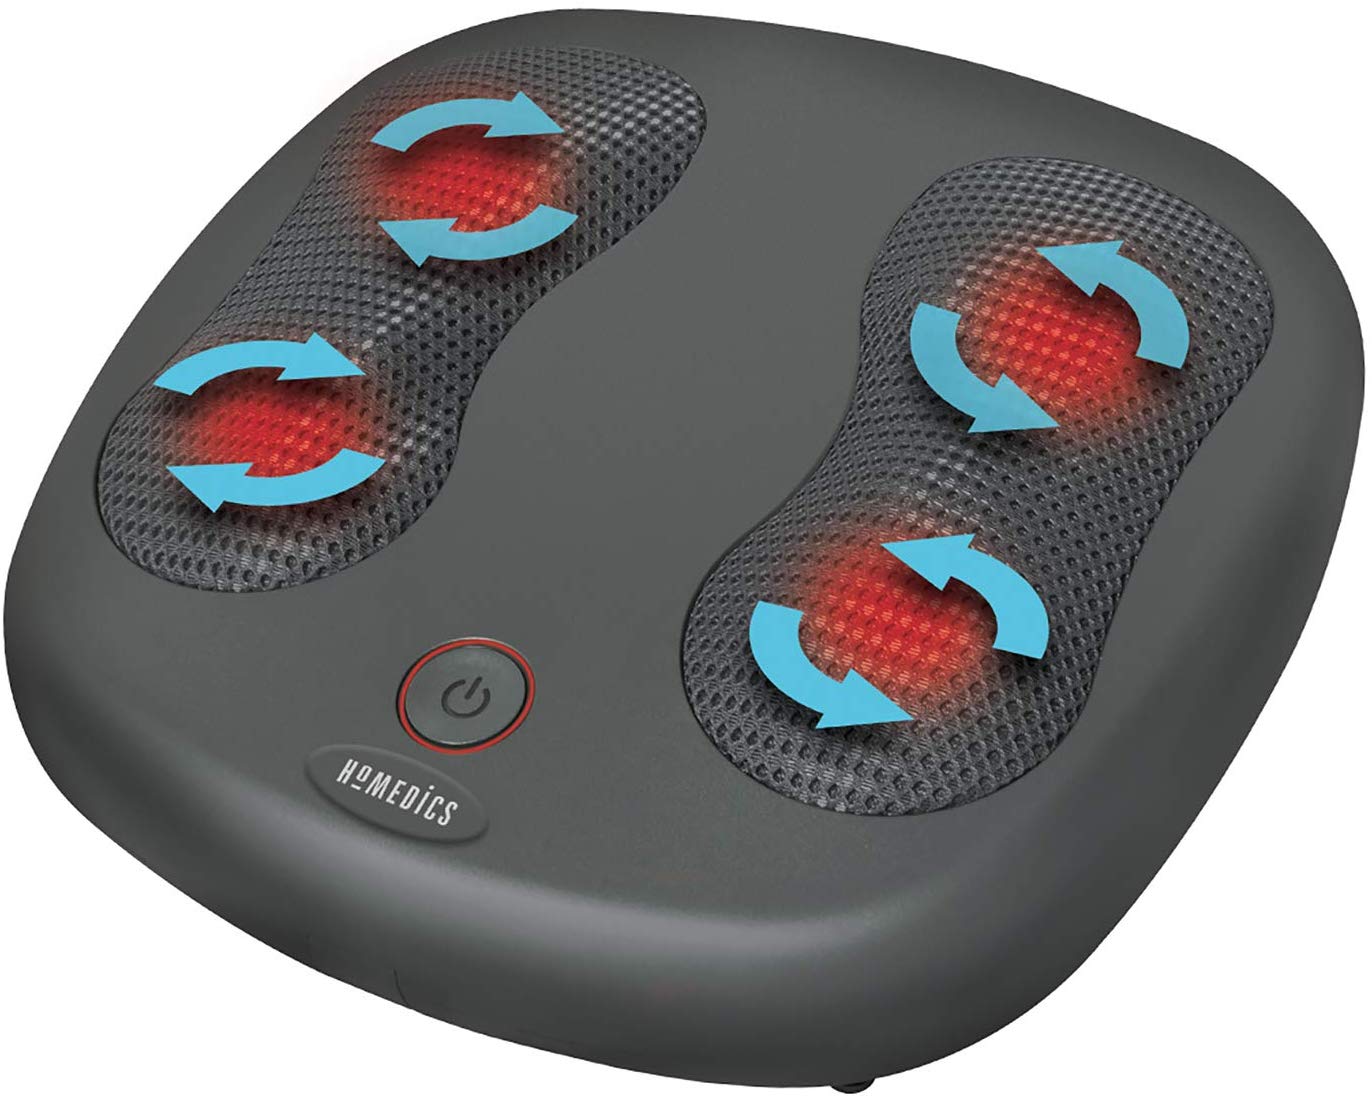 Máy massage chân HoMedics FMS-230H-EU công nghệ Mỹ